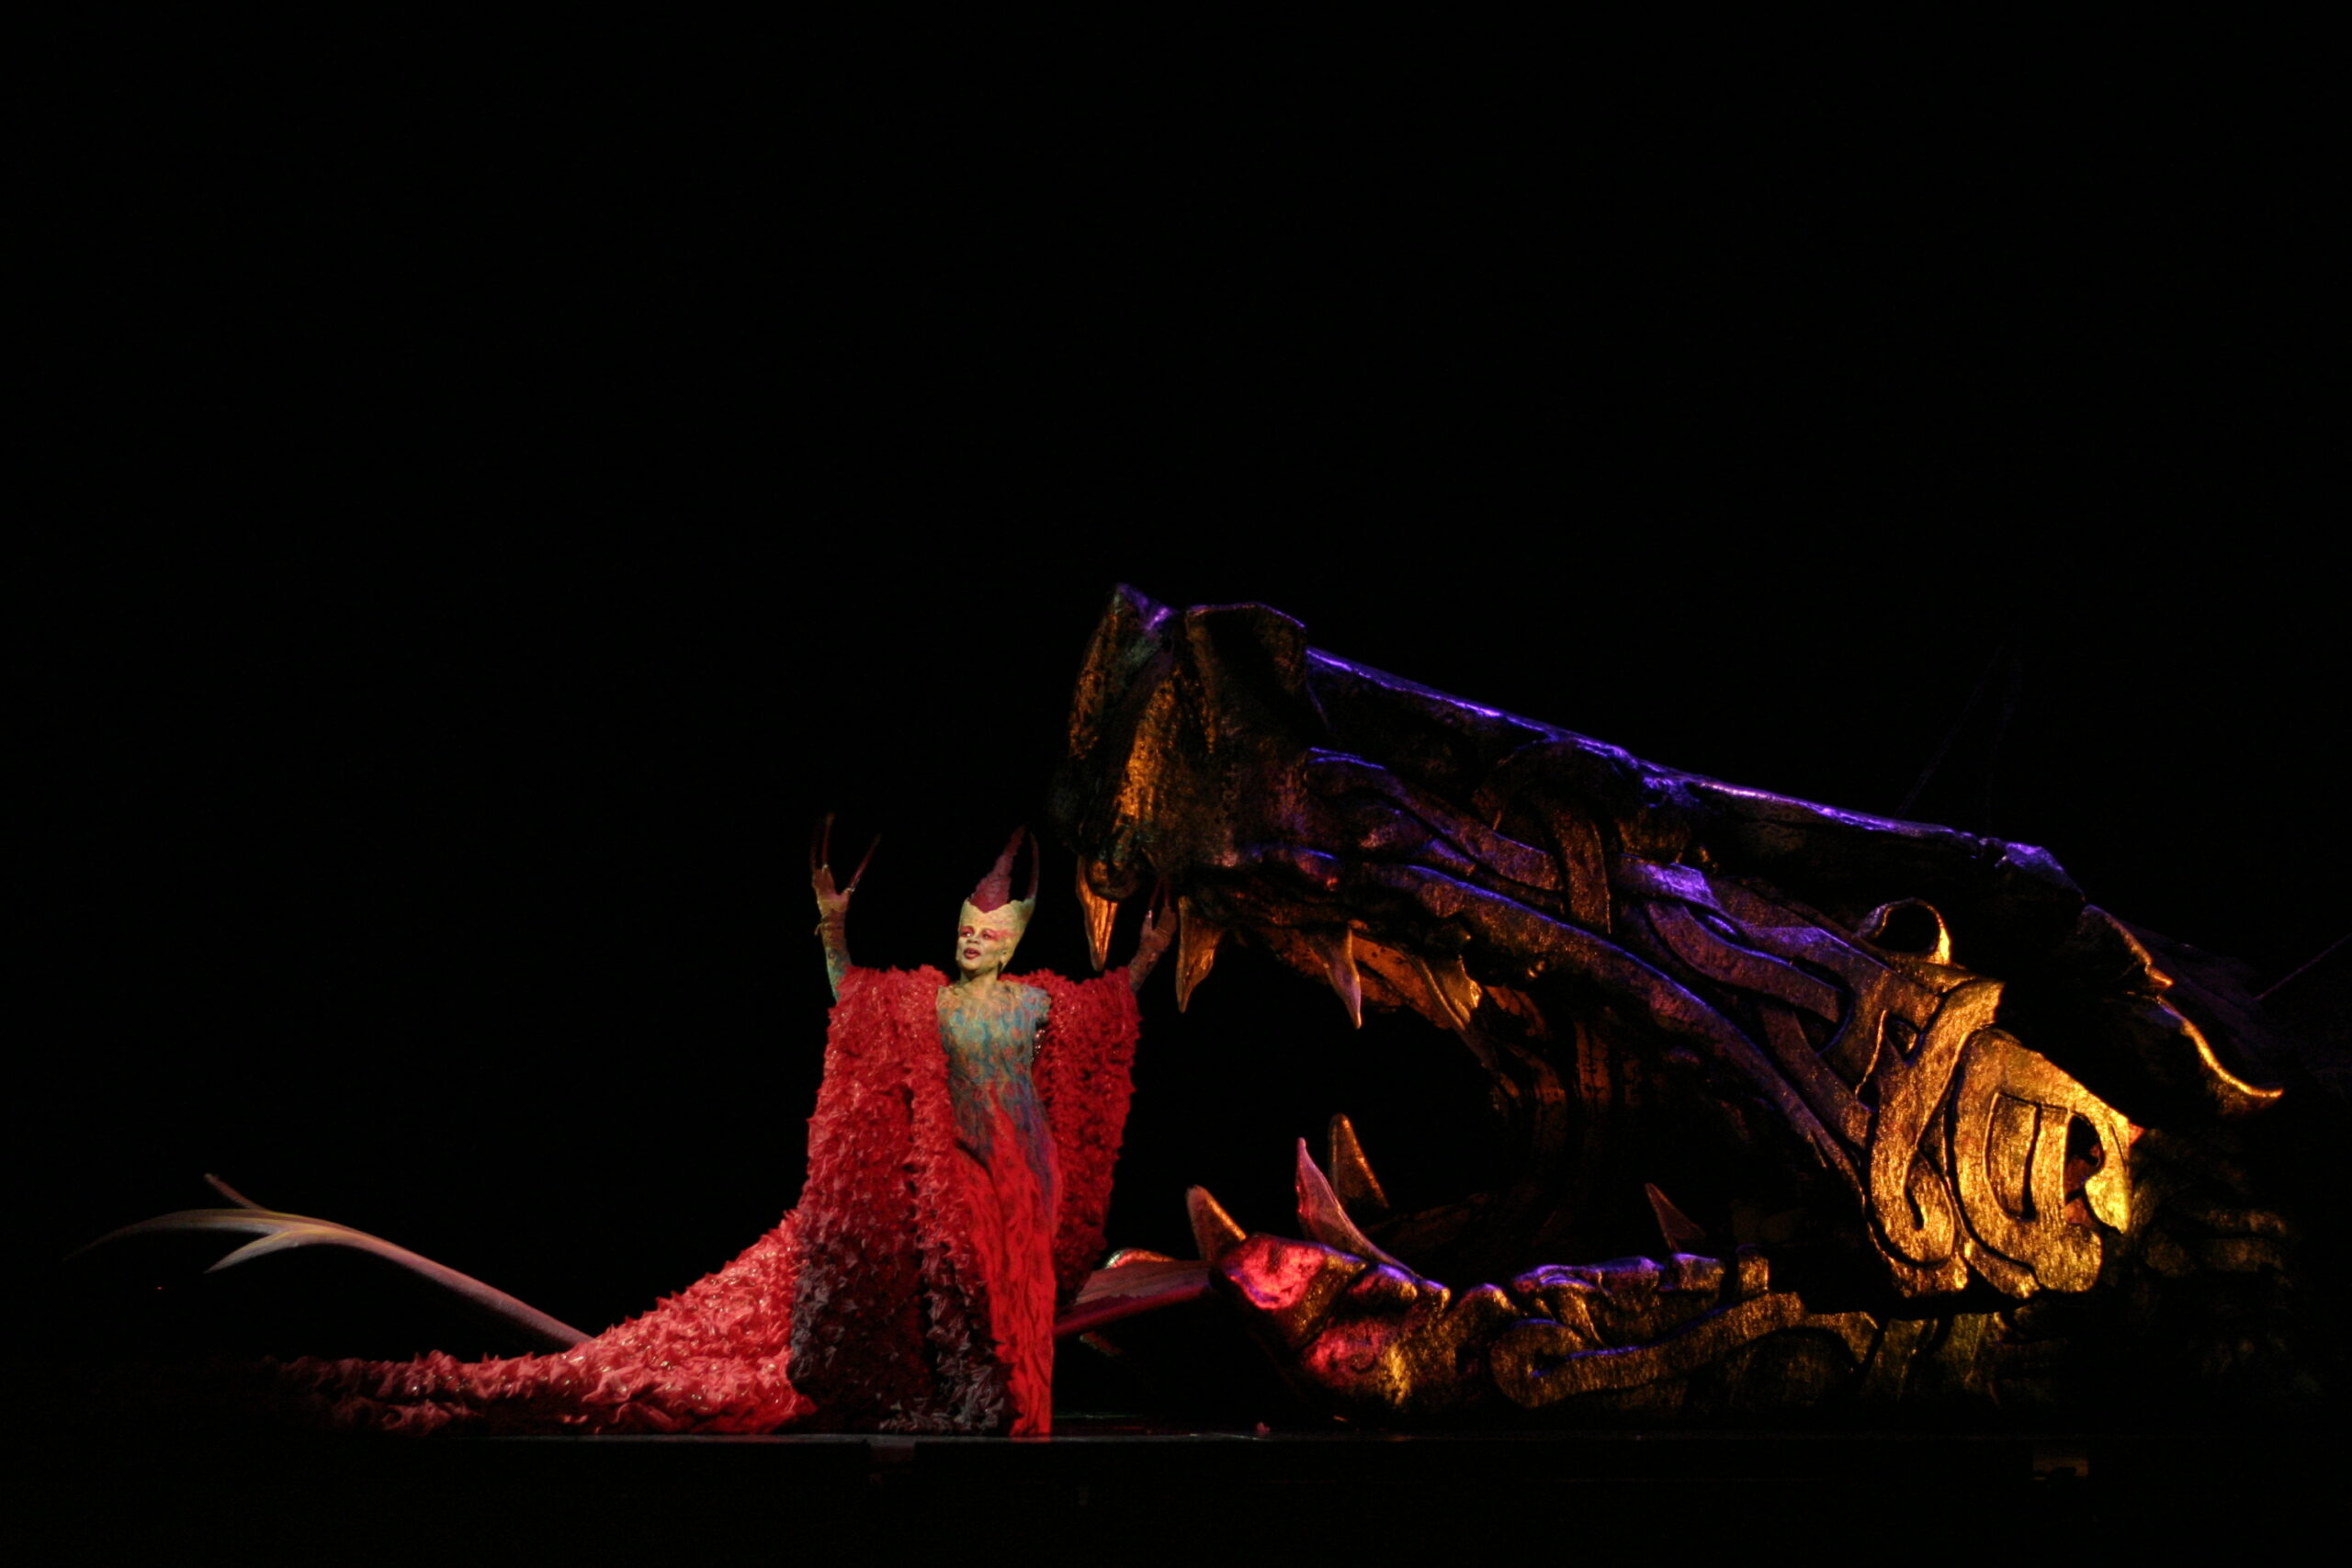 Арнольд сделал выдающееся произведение из войлока, которое является «драконьей тканью» для премьеры оперы «Грендель» в Опере Лос-Анджелеса. На снимке запечатлена заключительная генеральная репетиция оперы. Фото: Роберт Миллард, MillardPhotos.com